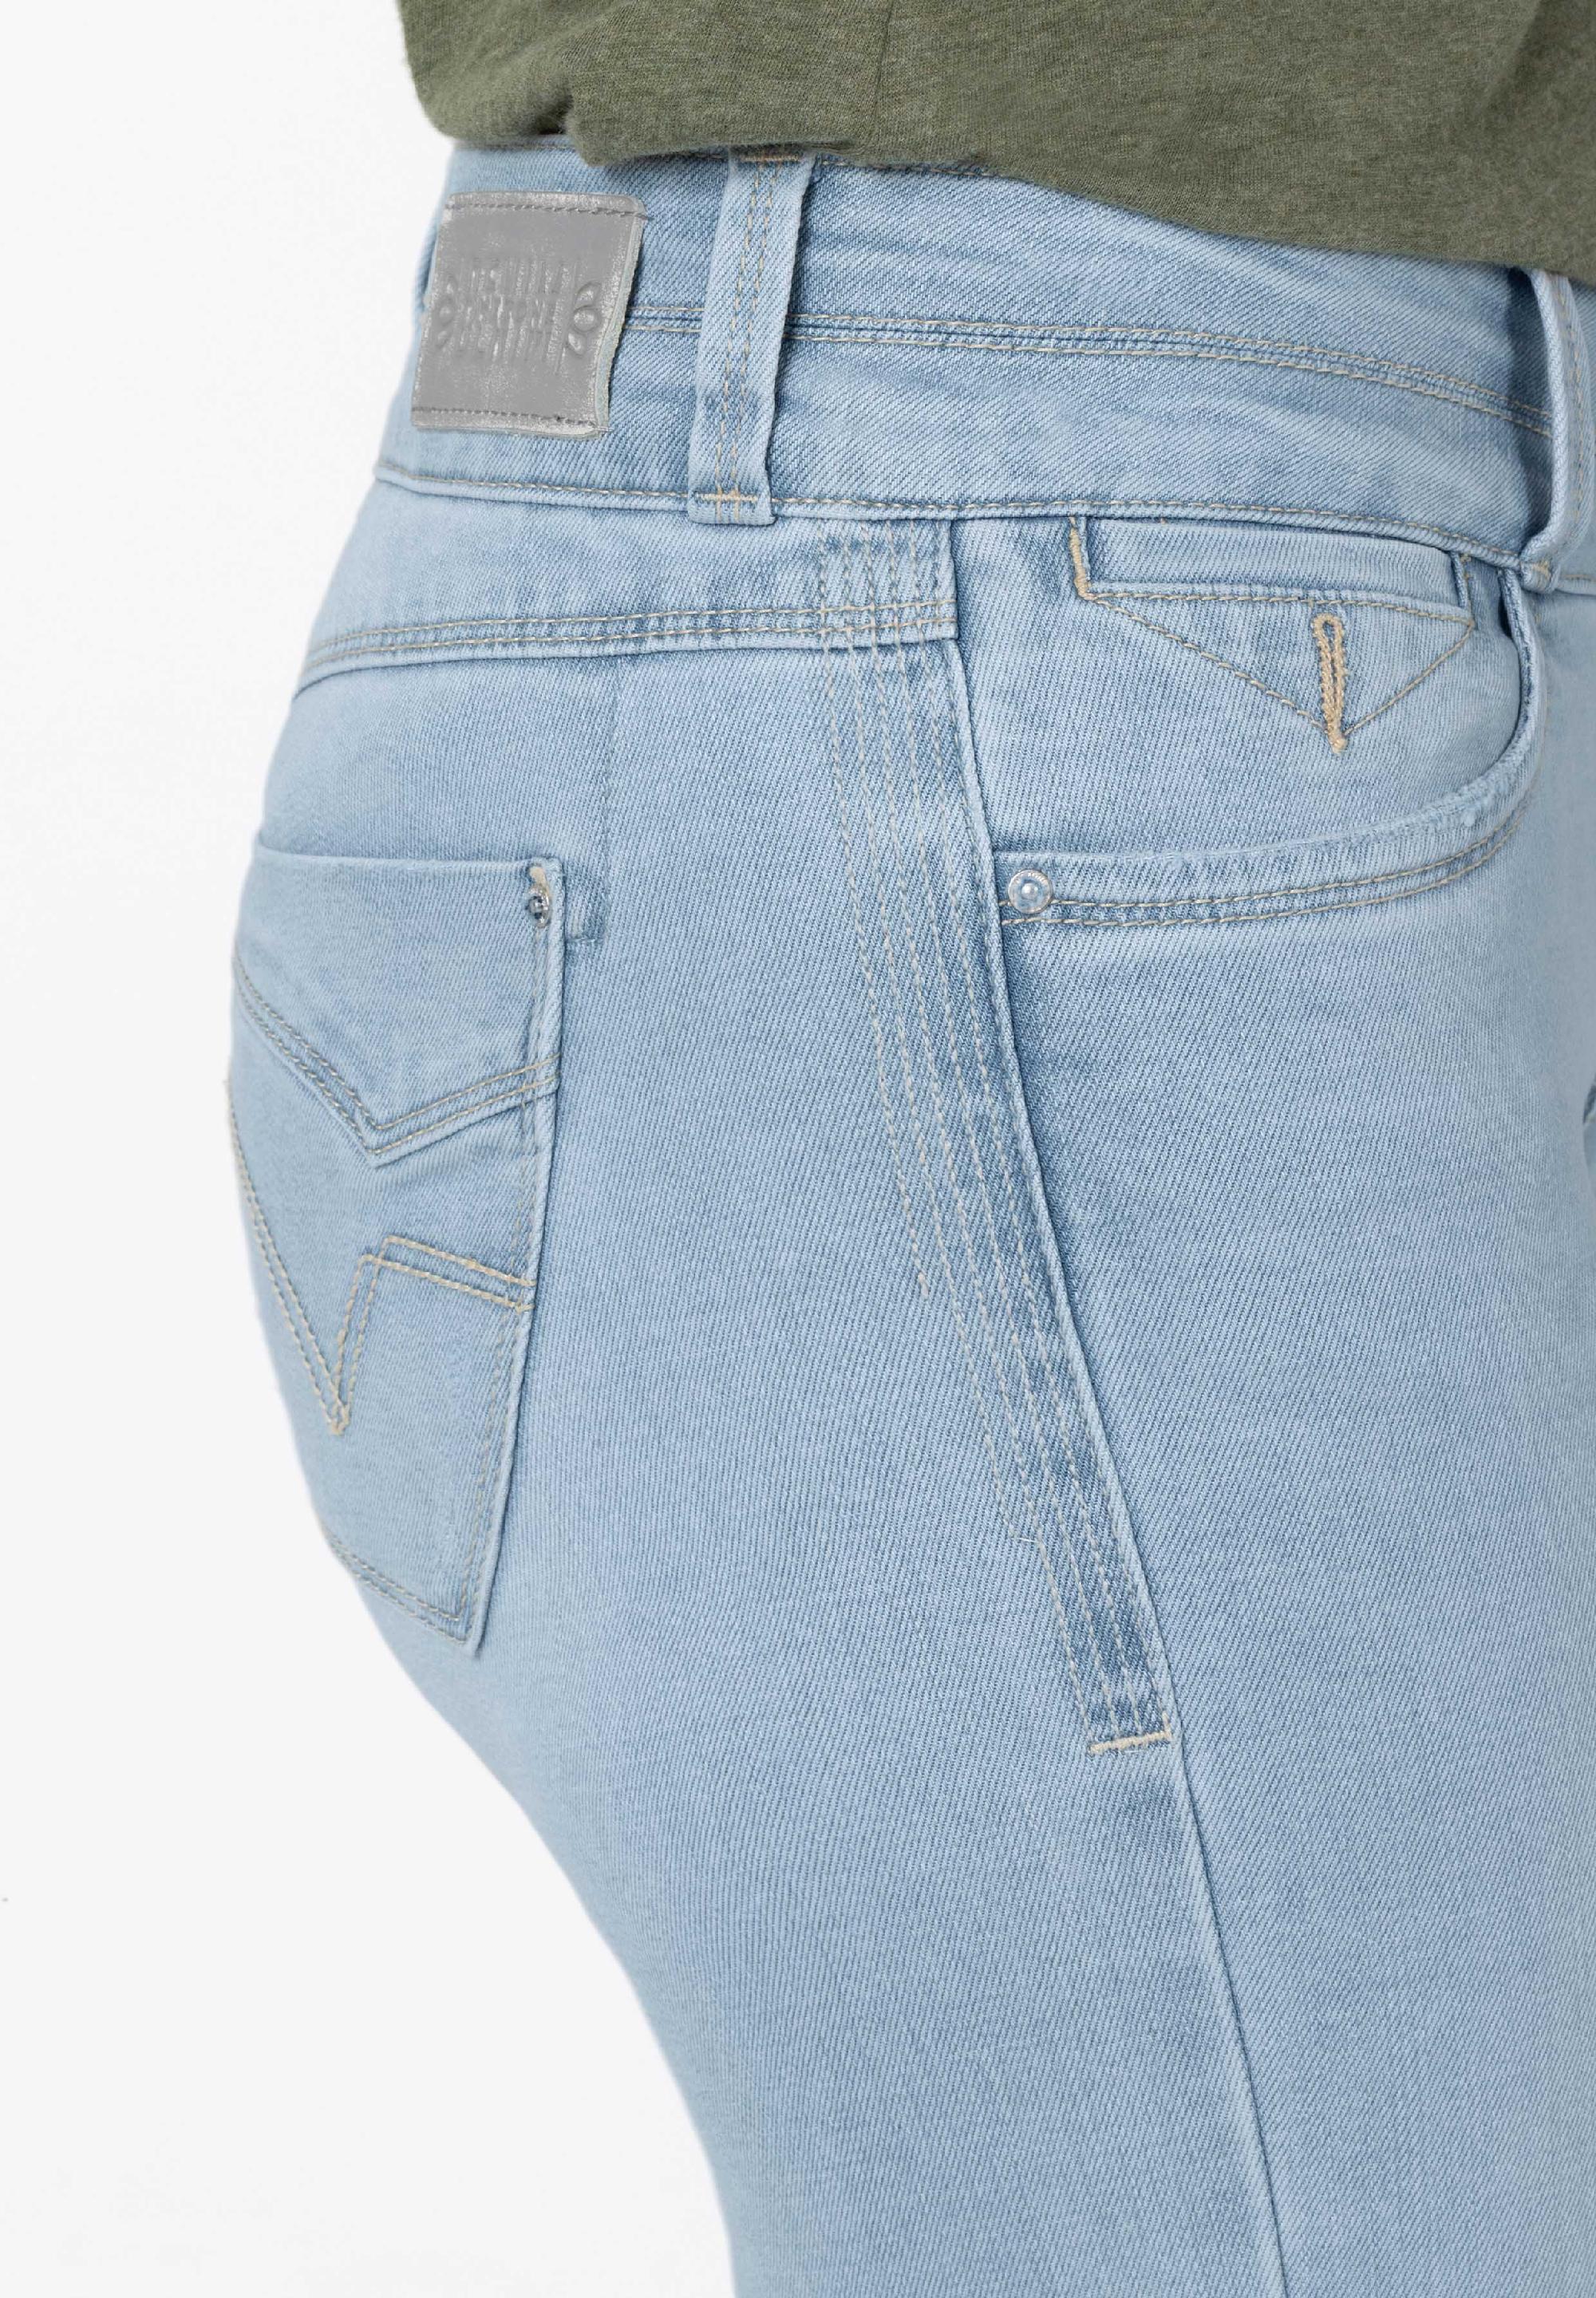 Welche Kauffaktoren es beim Kauf die Jeans timezone damen zu beachten gilt